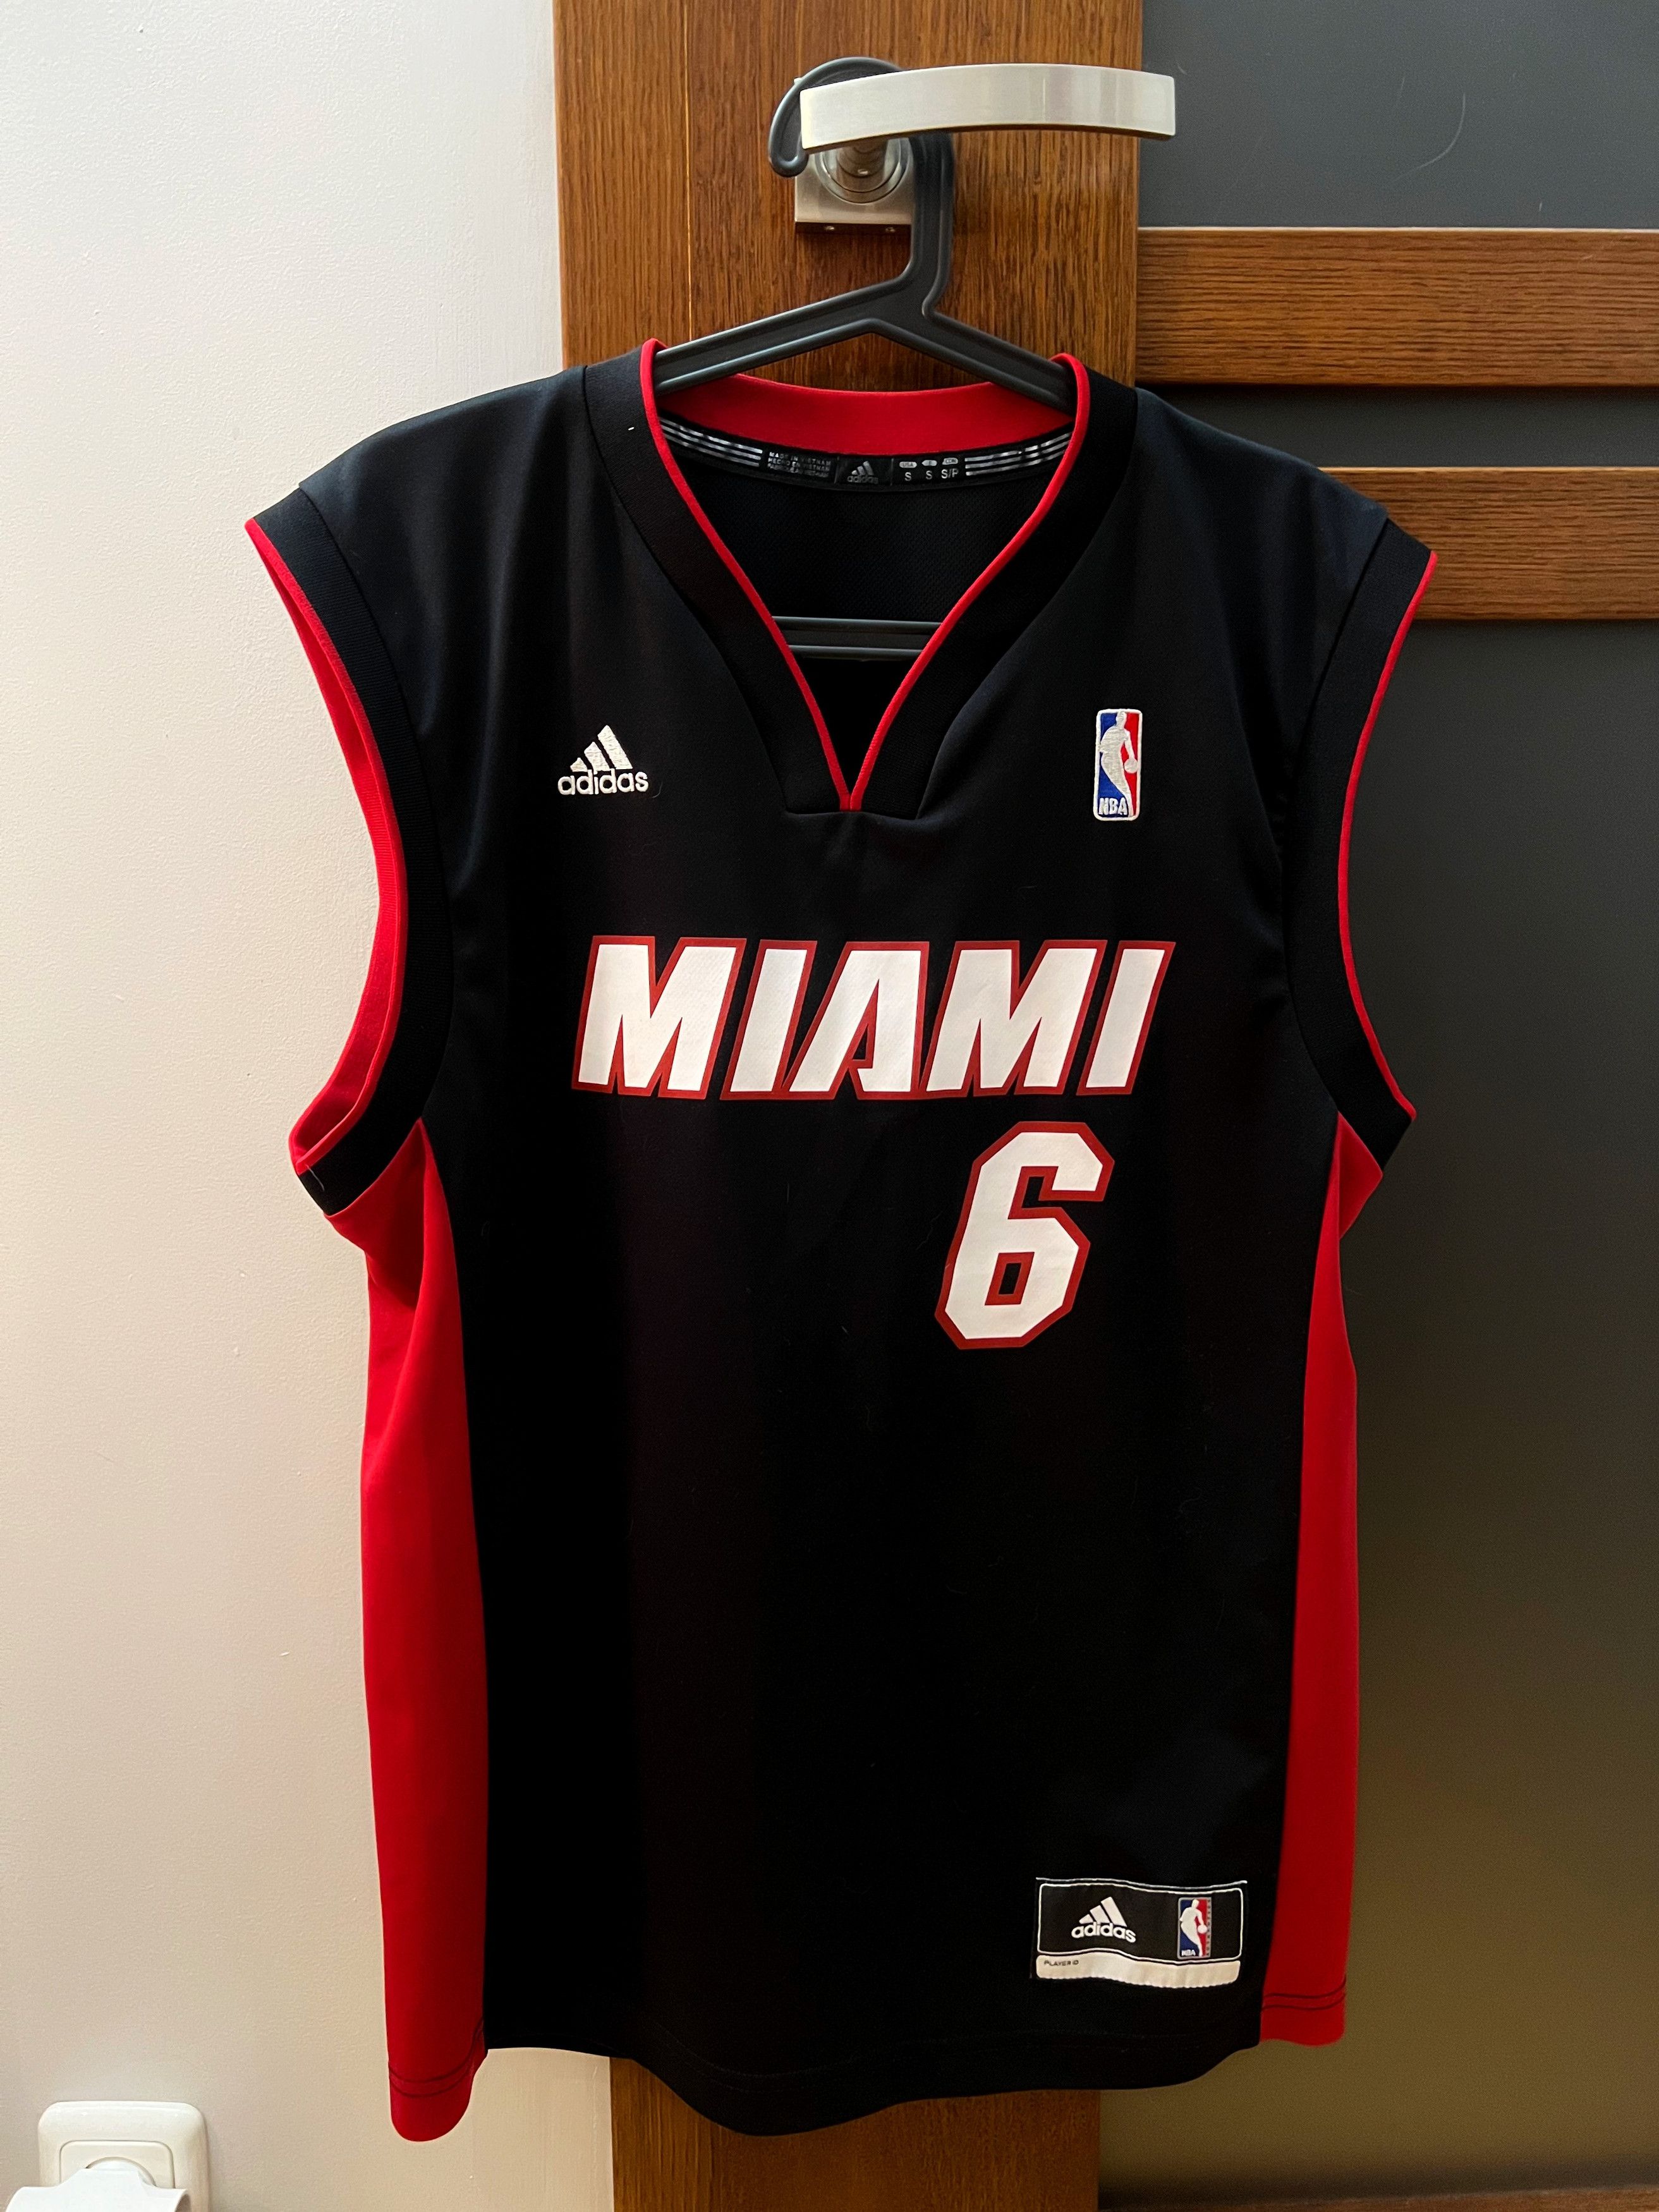 Adidas Chicago Bulls NBA *Noah* Shirt S S